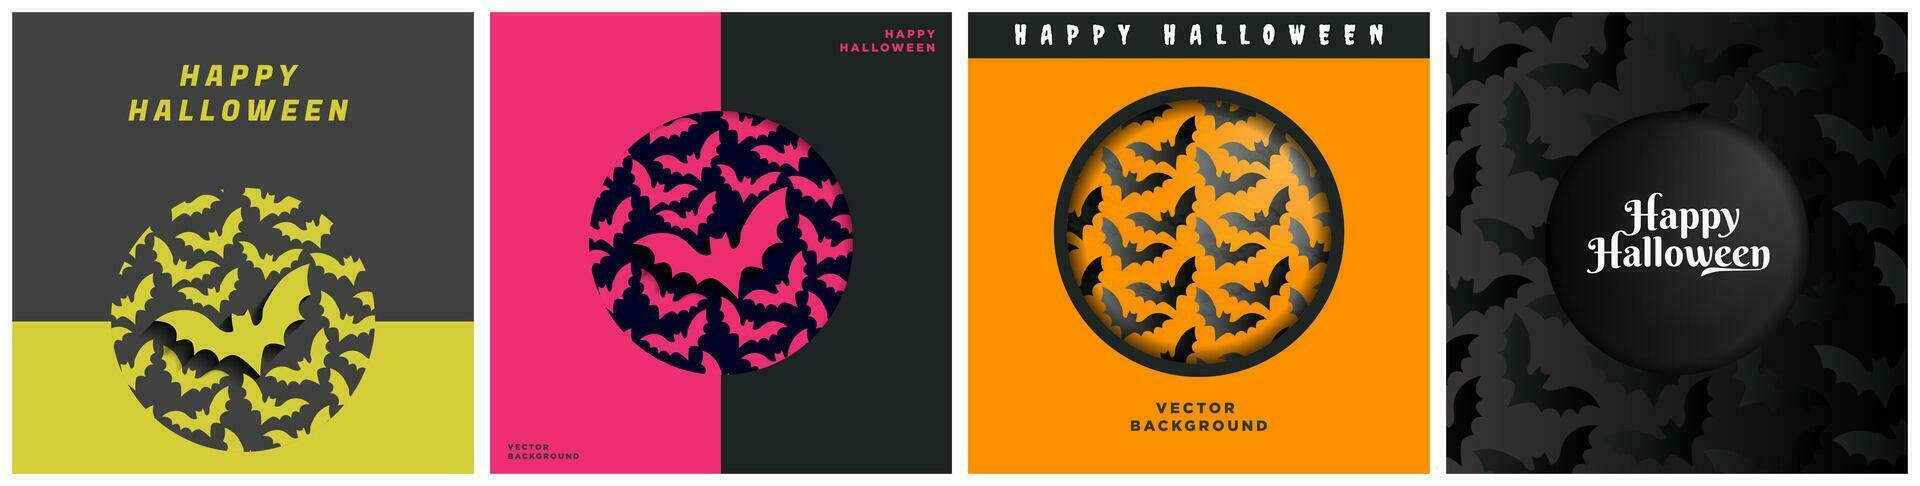 uppsättning av geometrisk halloween fladdermus tema omslag album kort mallar i mörk och orange färger, kort affisch layouter för halloween. fladdermus mönstrad mönster. vektor illustrationer.